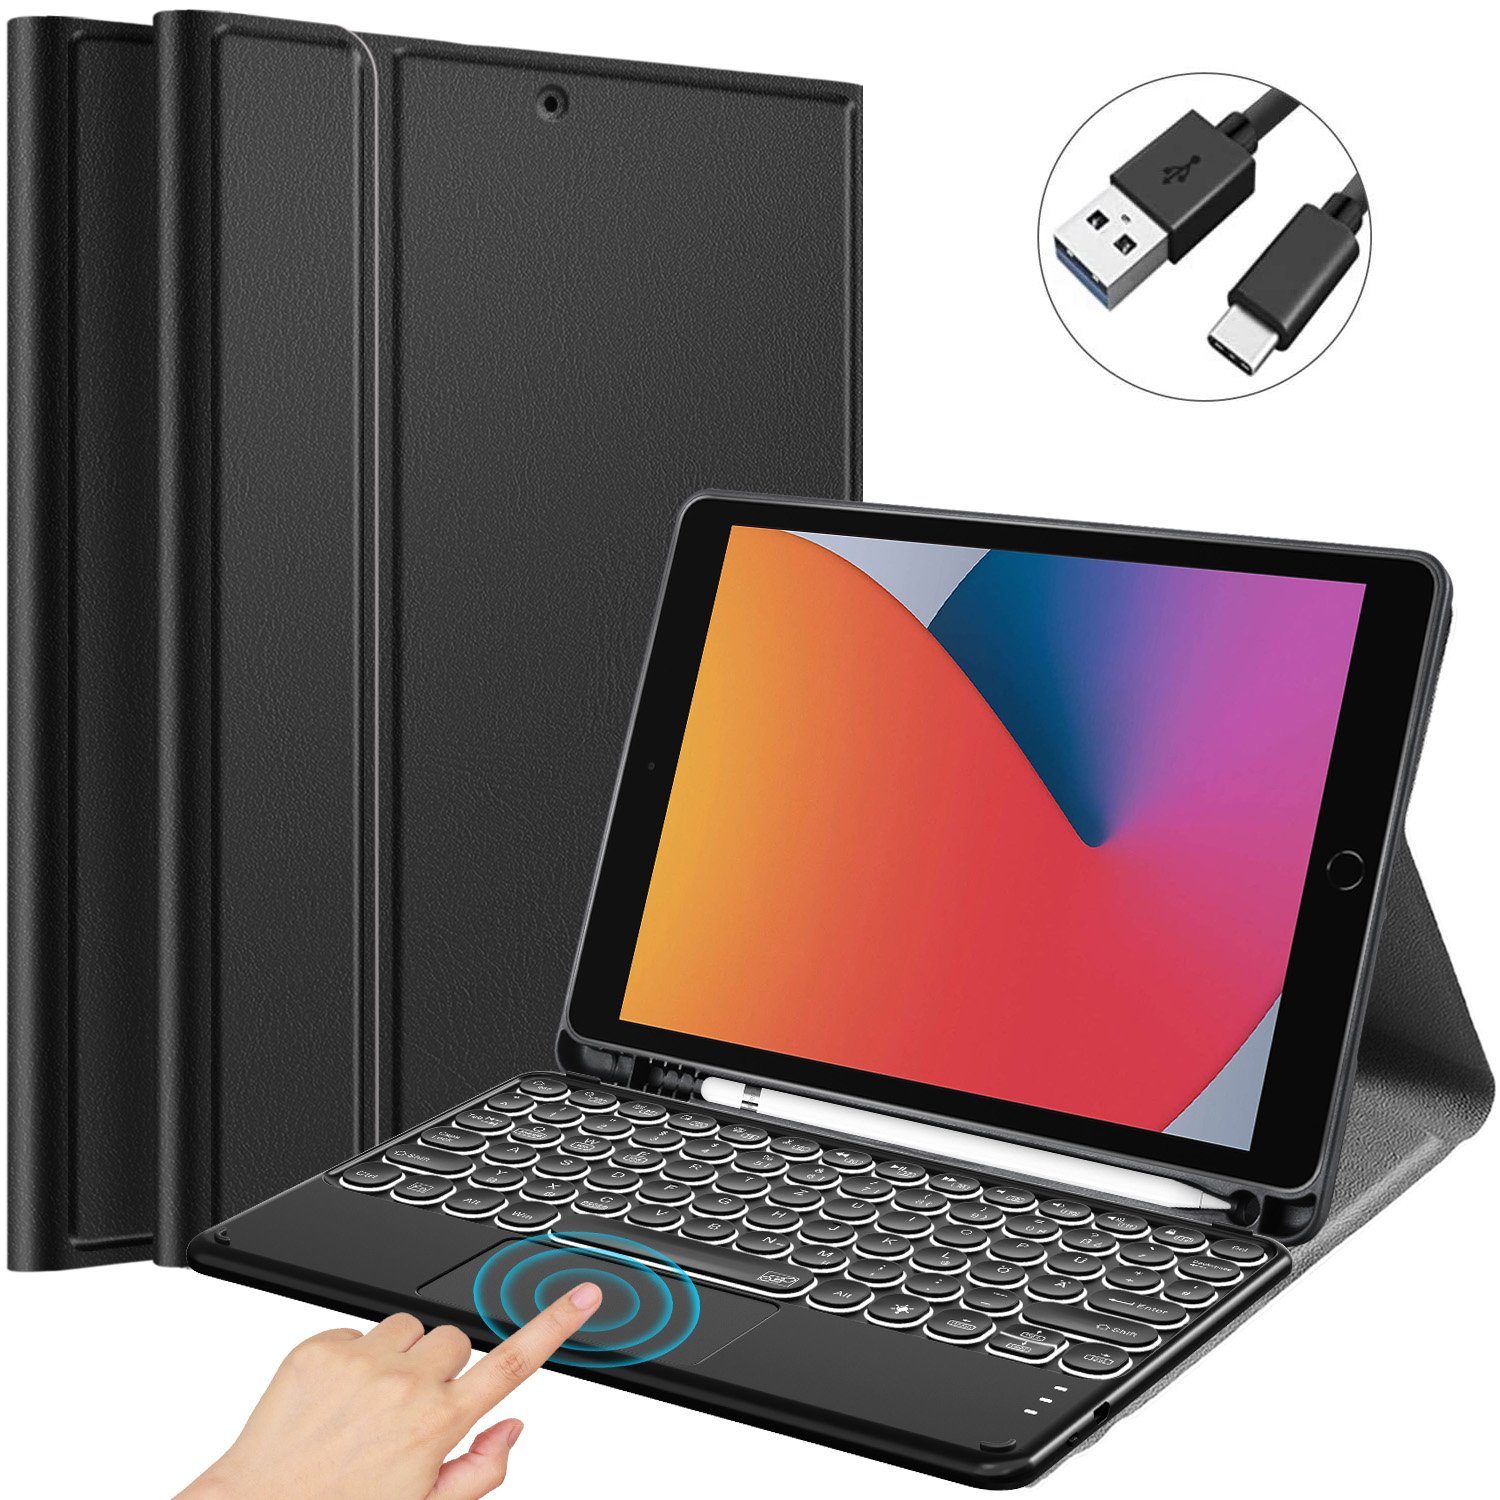 IVSO Tablet-Tastatur für ipad 2019/iPad Air3/ipad Pro 10.5/10.2 zoll iPad  mini Tablet-PC [QWERTZ Deutsches] Tablet-Tastatur (Beleuchtete Bluetooth  Tastatur mit Touchpad)